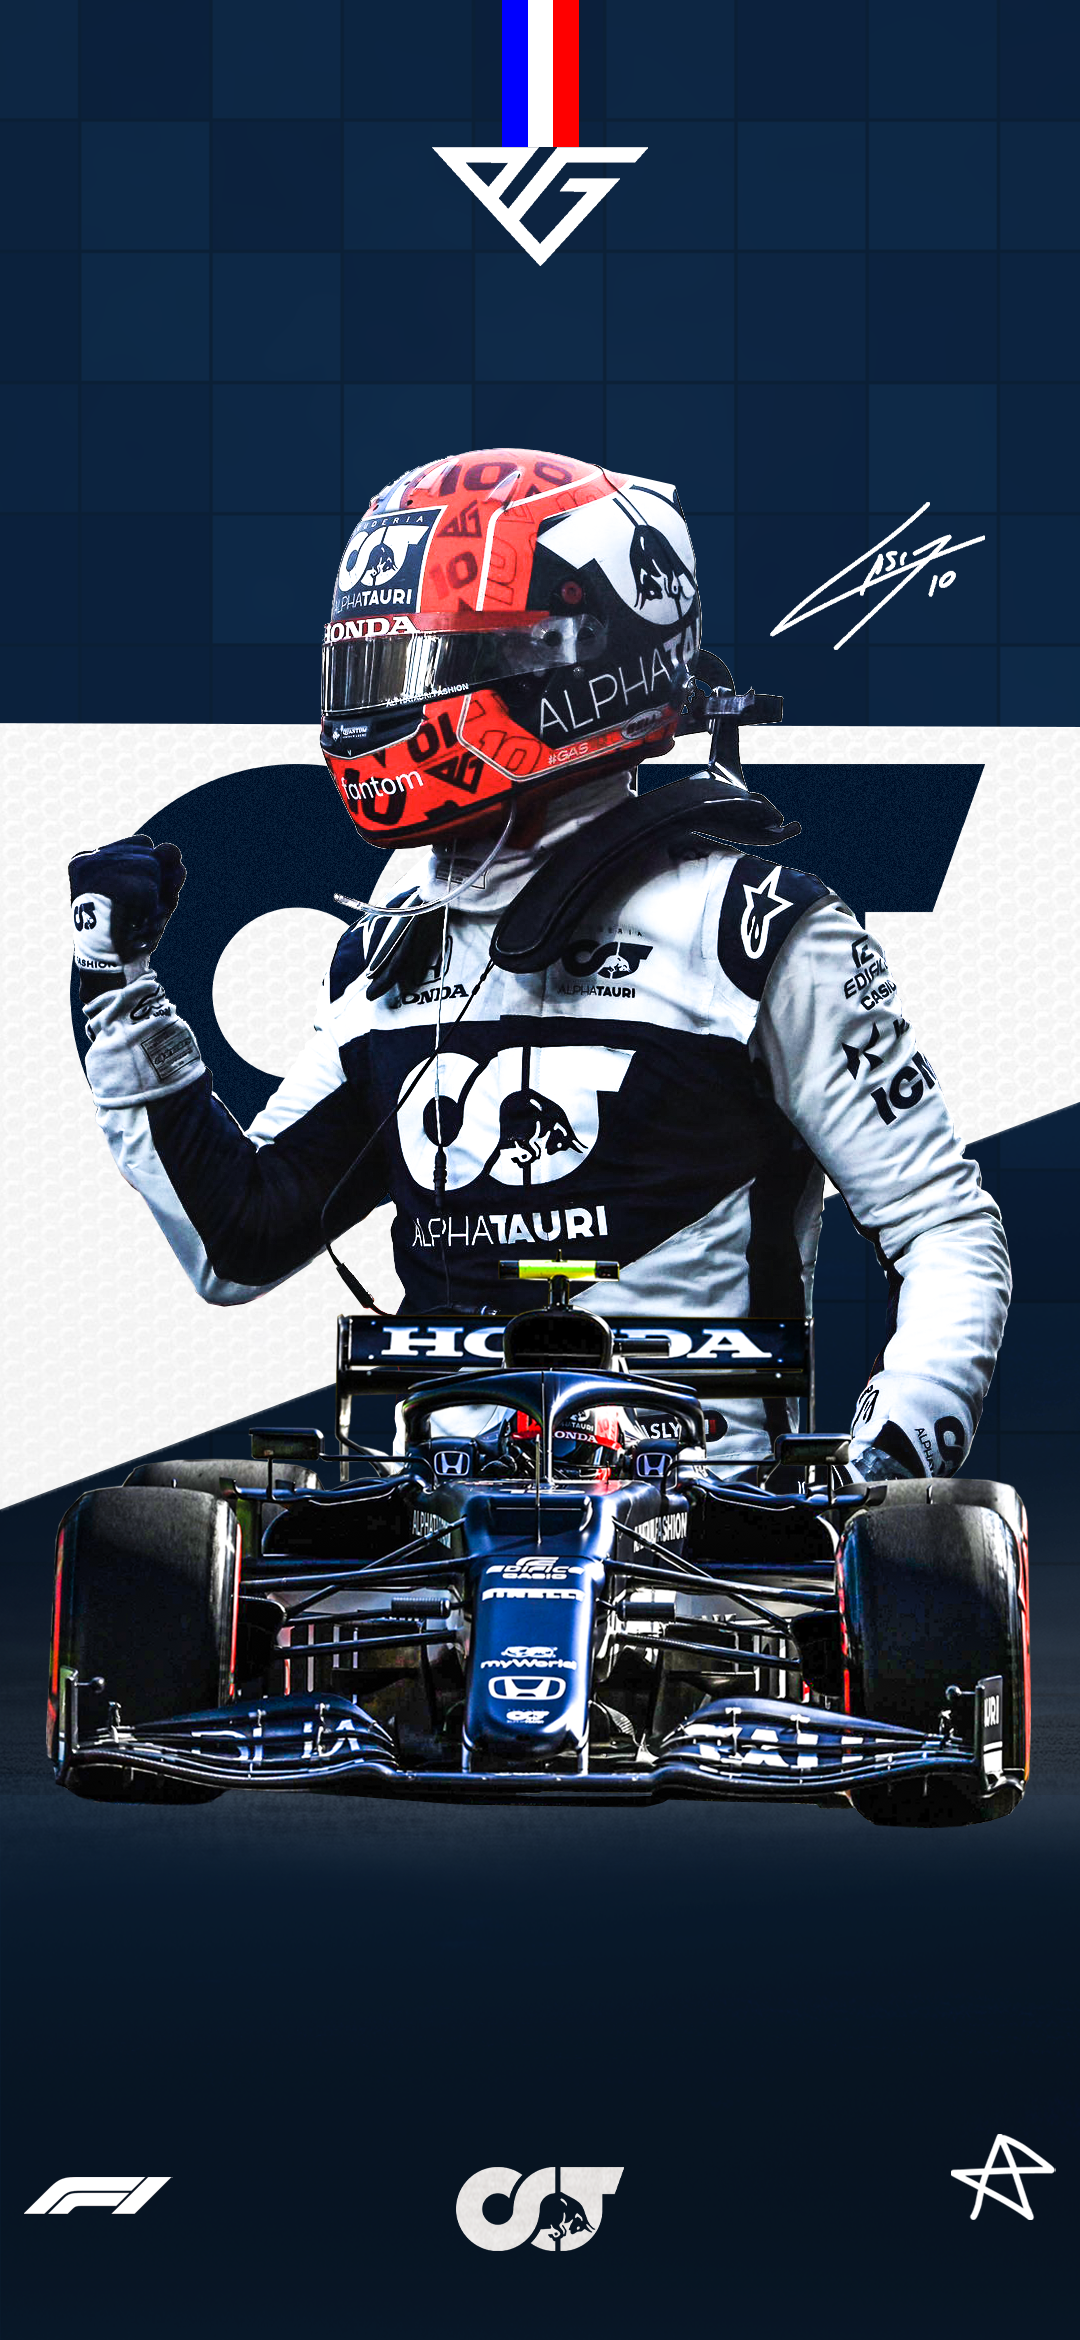 Pierre Gasly 2021 Azerbaigian Grand Prix Wallpaper. Congratulations Pierre for the podium!: formula1